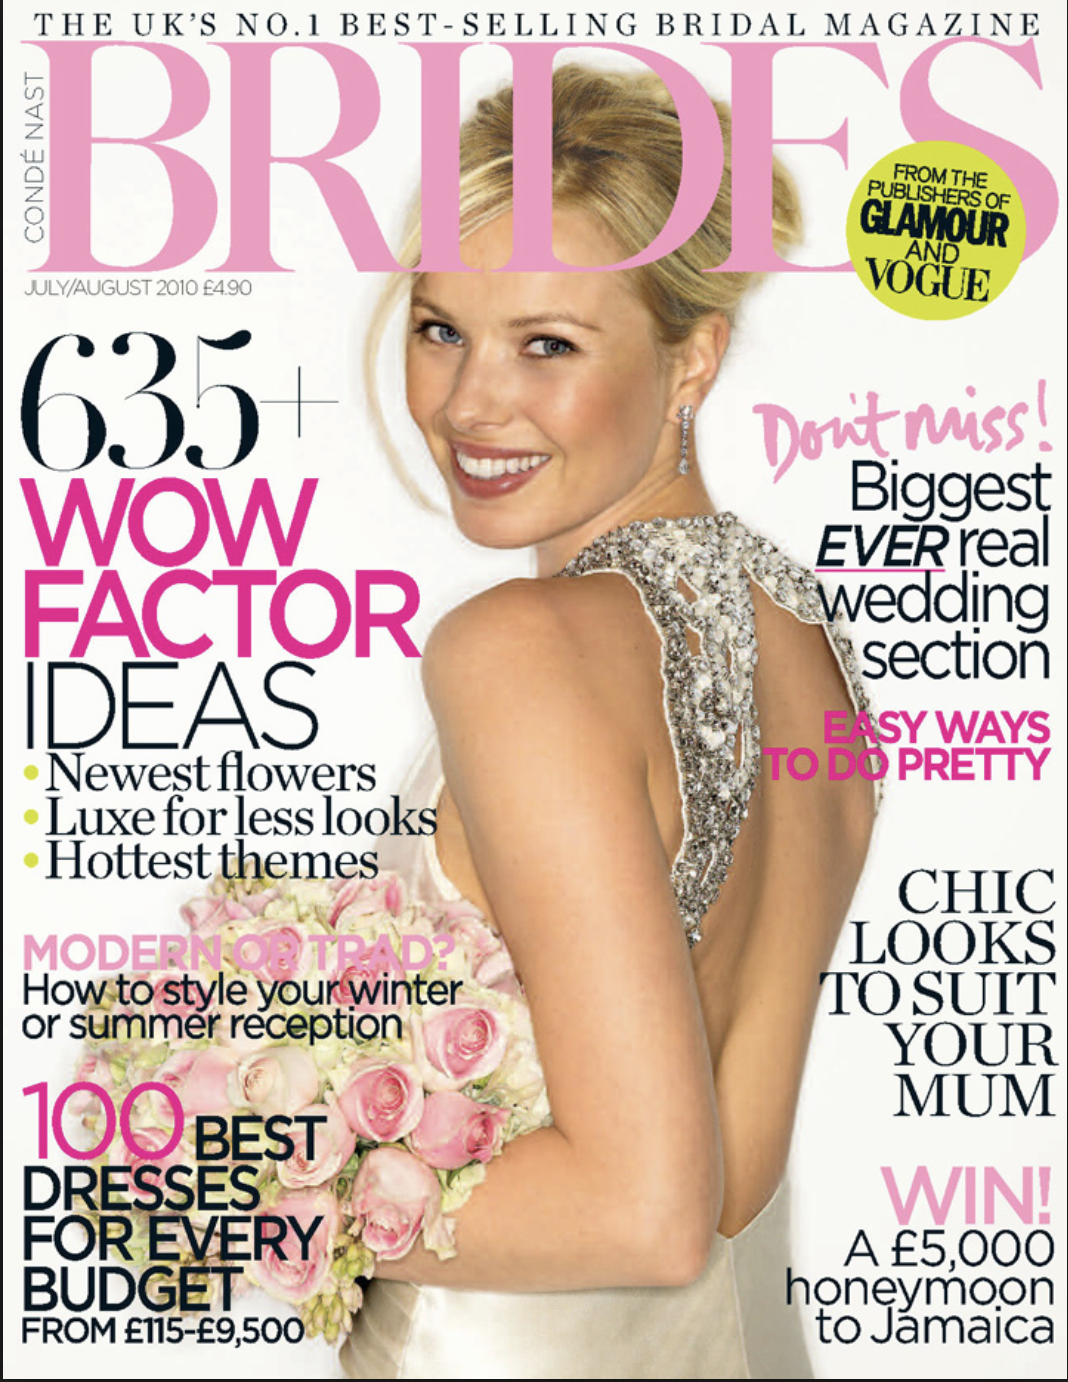 Bridesmagazine.co.uk, July 2010